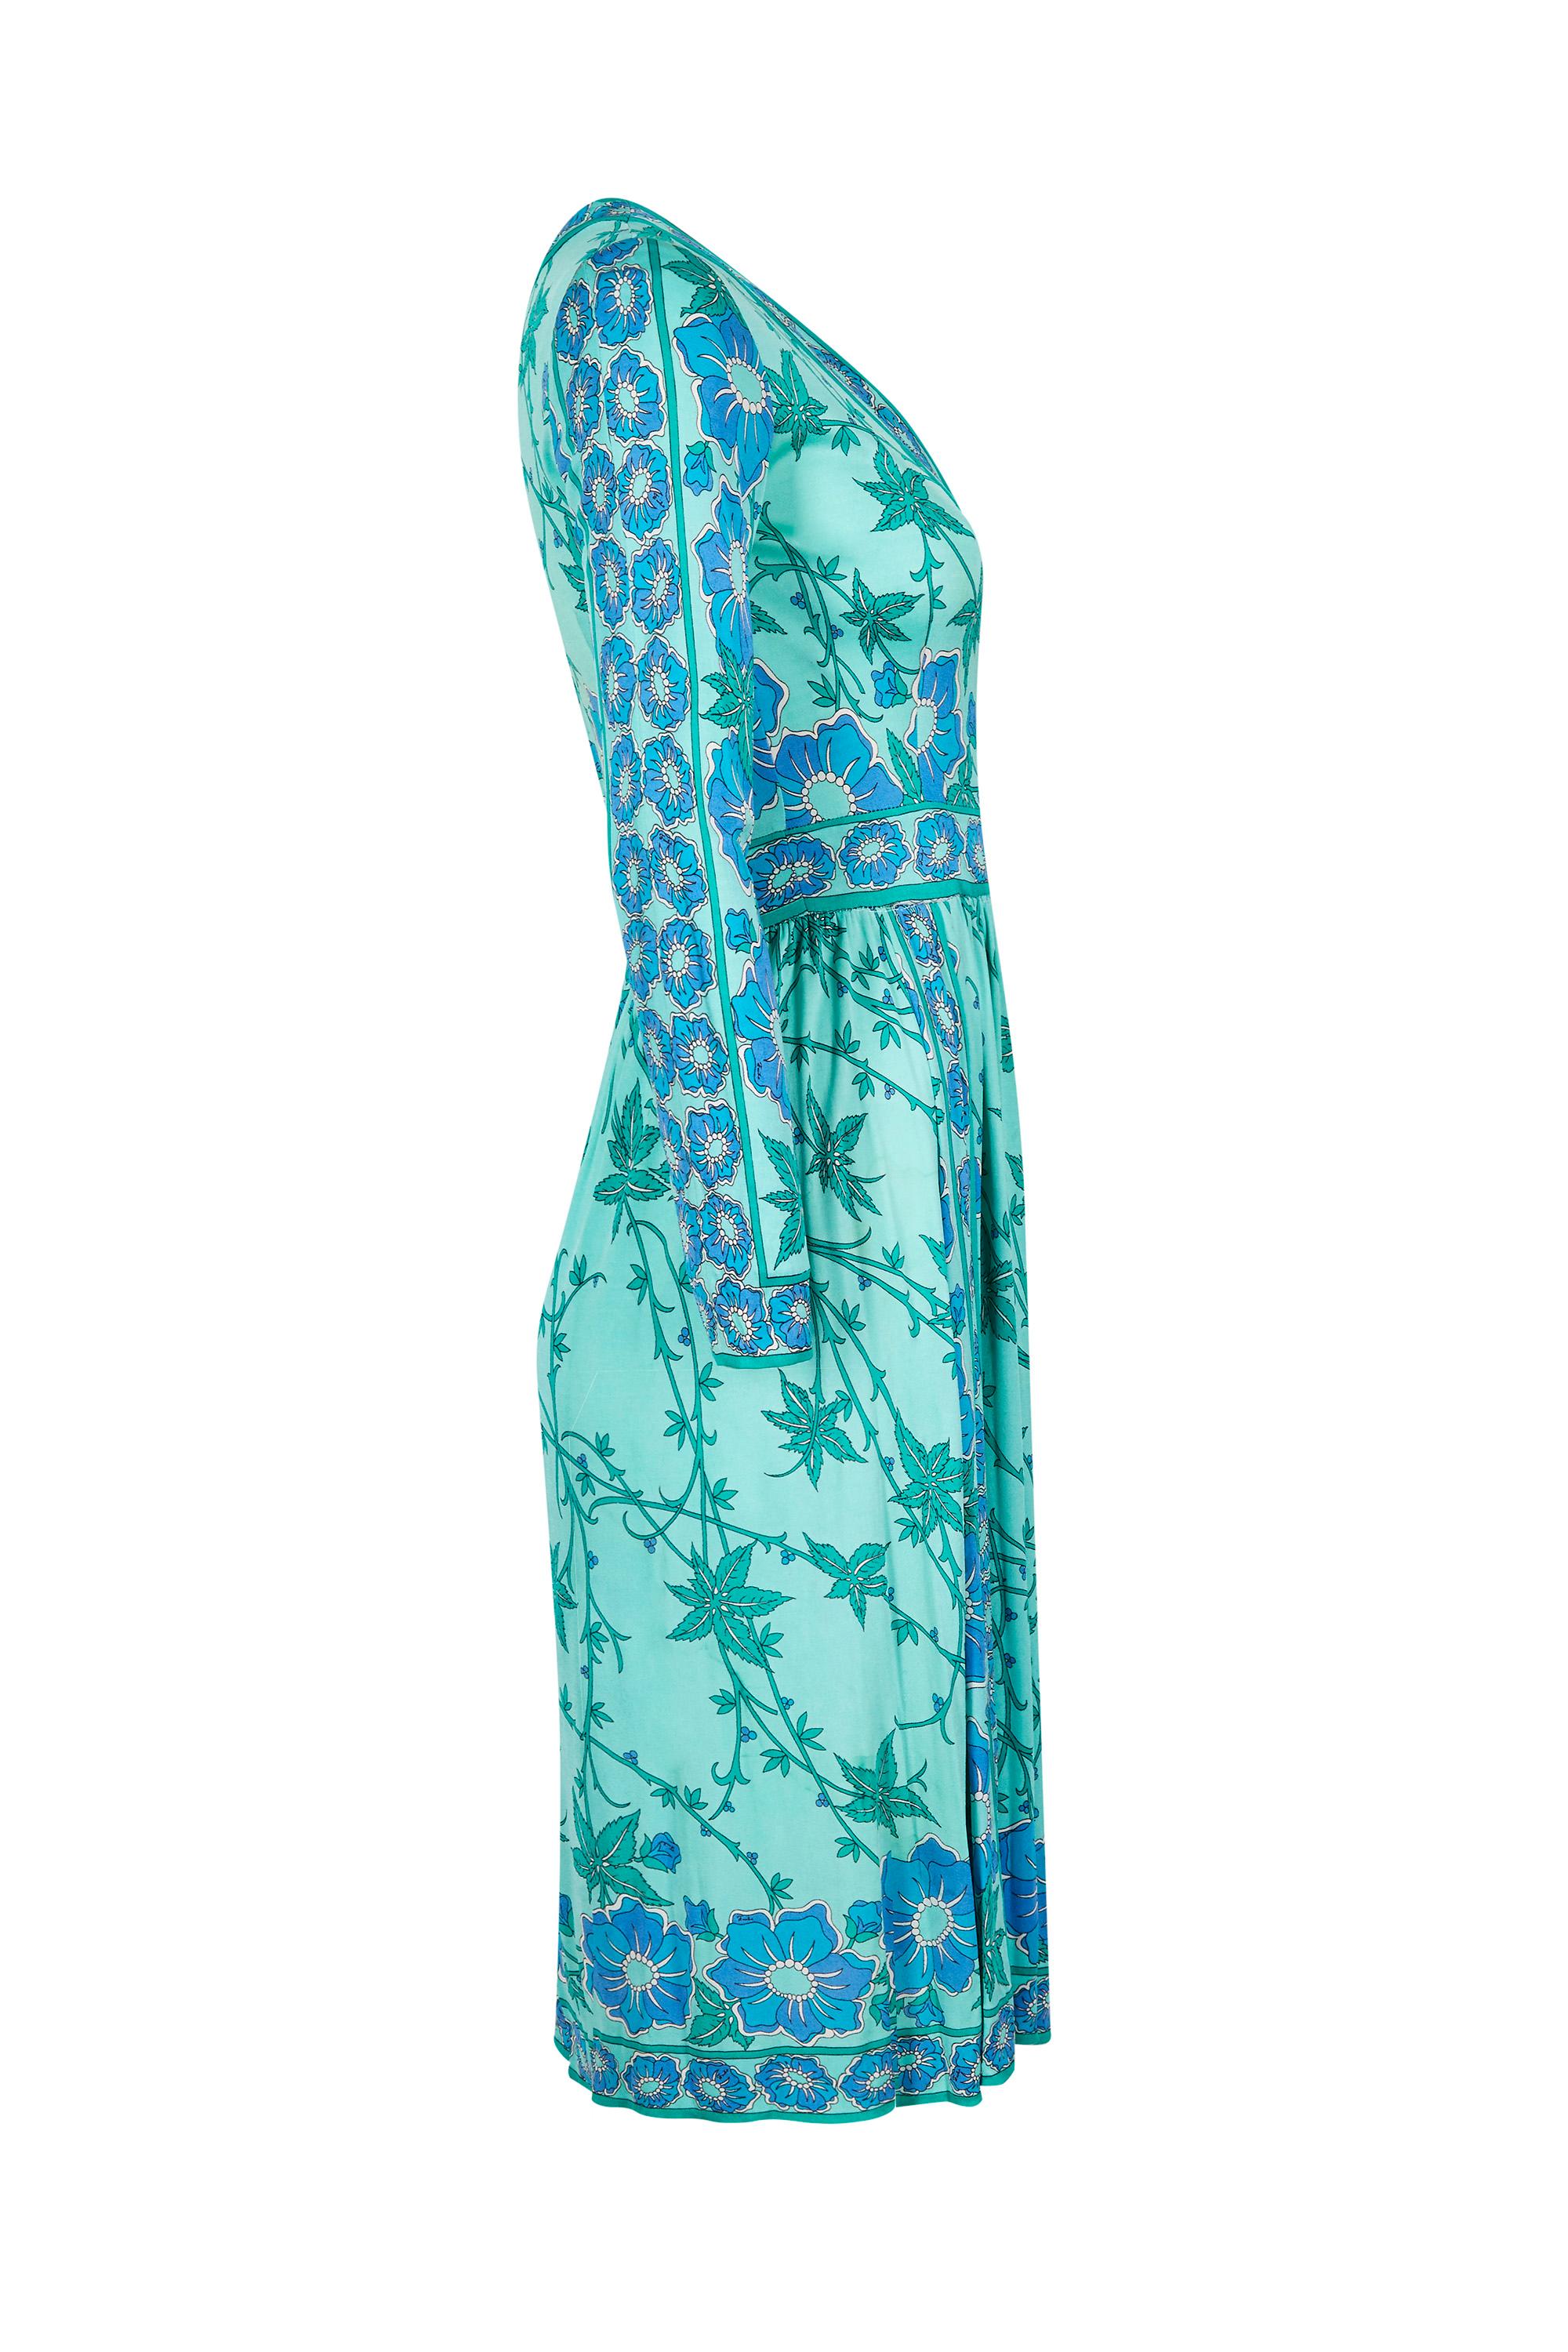 Cette magnifique robe en jersey de soie imprimé turquoise des années 1970 avec un joli corsage croisé est une pièce classique d'Emilio Pucci, vendue chez Saks Fifth avenue et est en très bon état vintage.  Le tissu jersey de soie doux a conservé